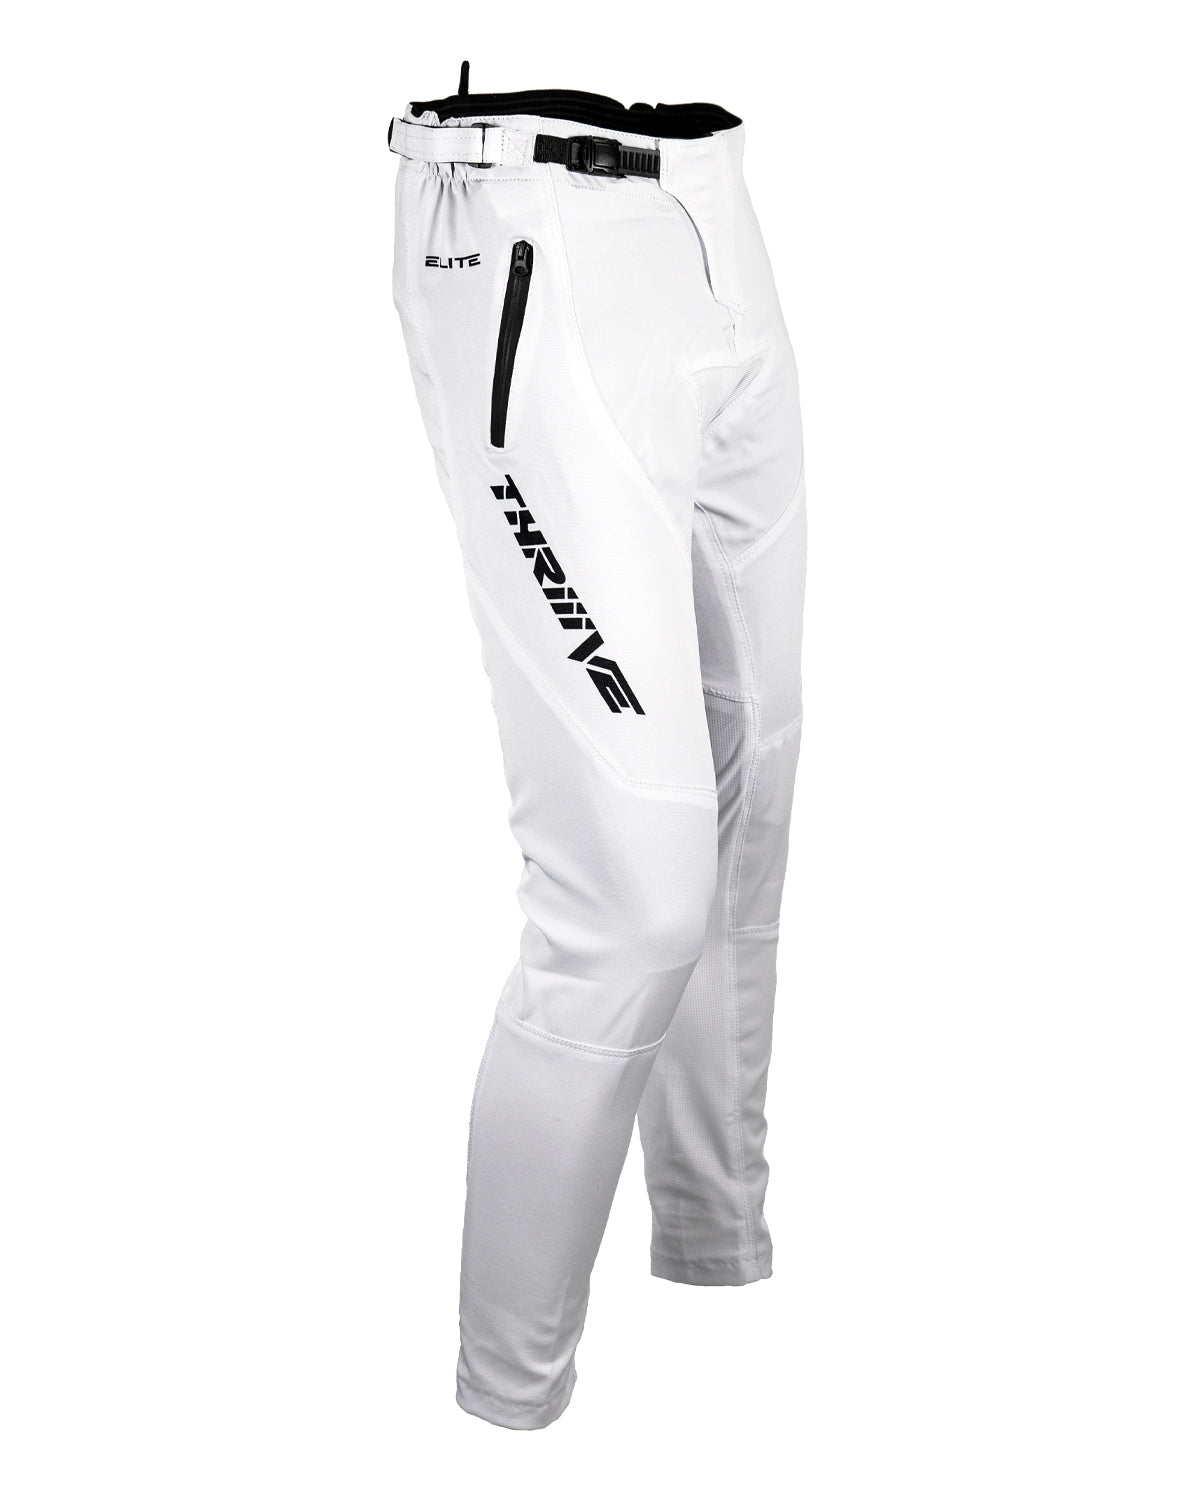 Elite Stretch Race Pants - White